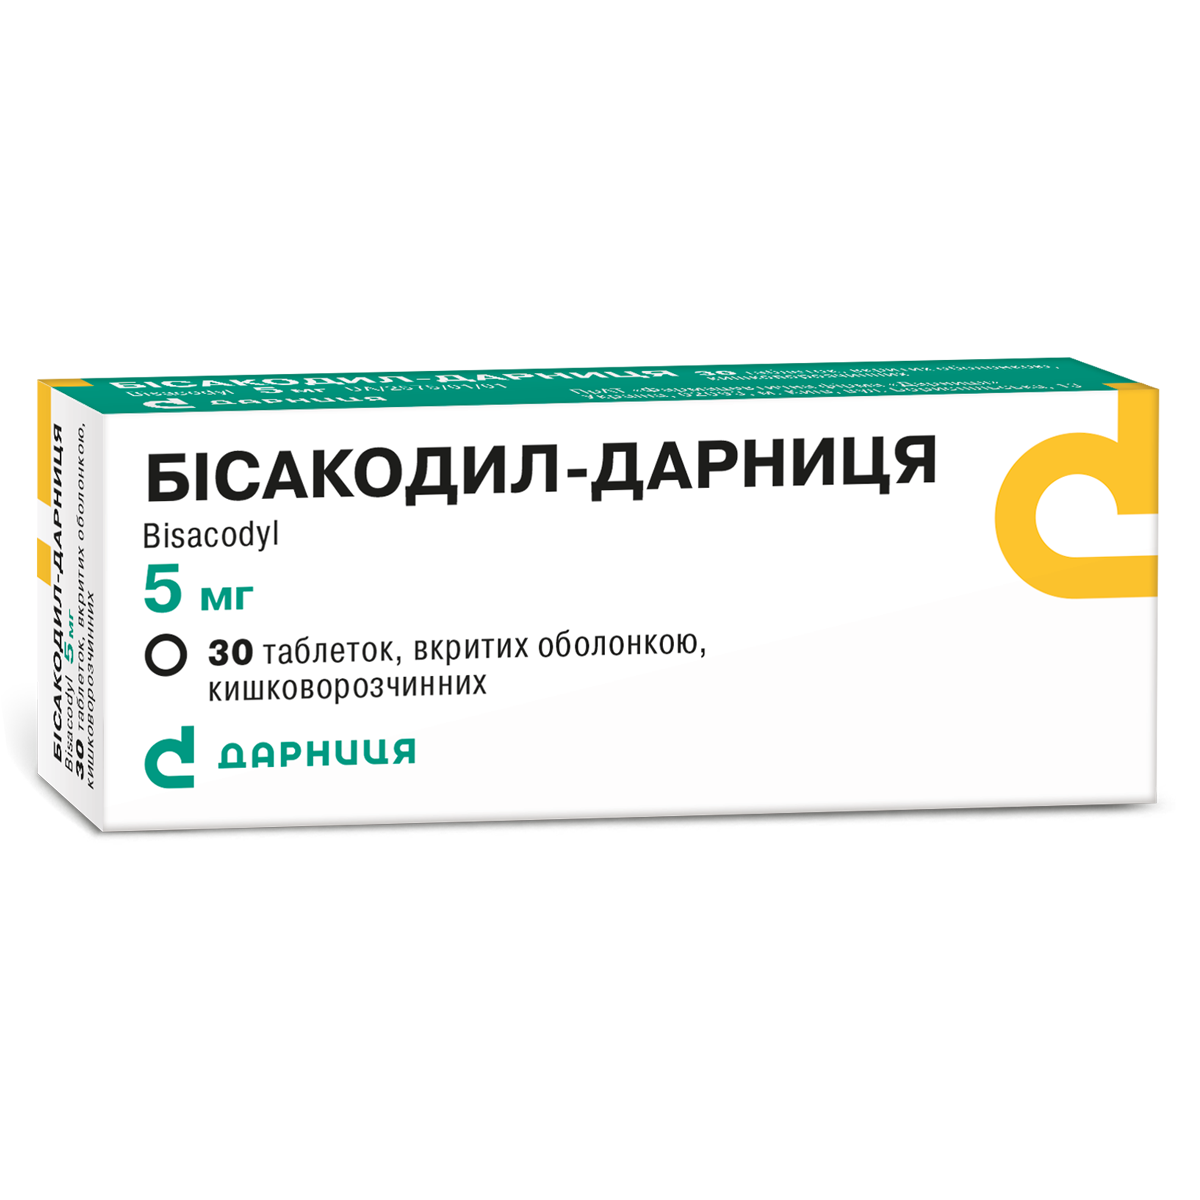 Bisacodyl-Darnitsa